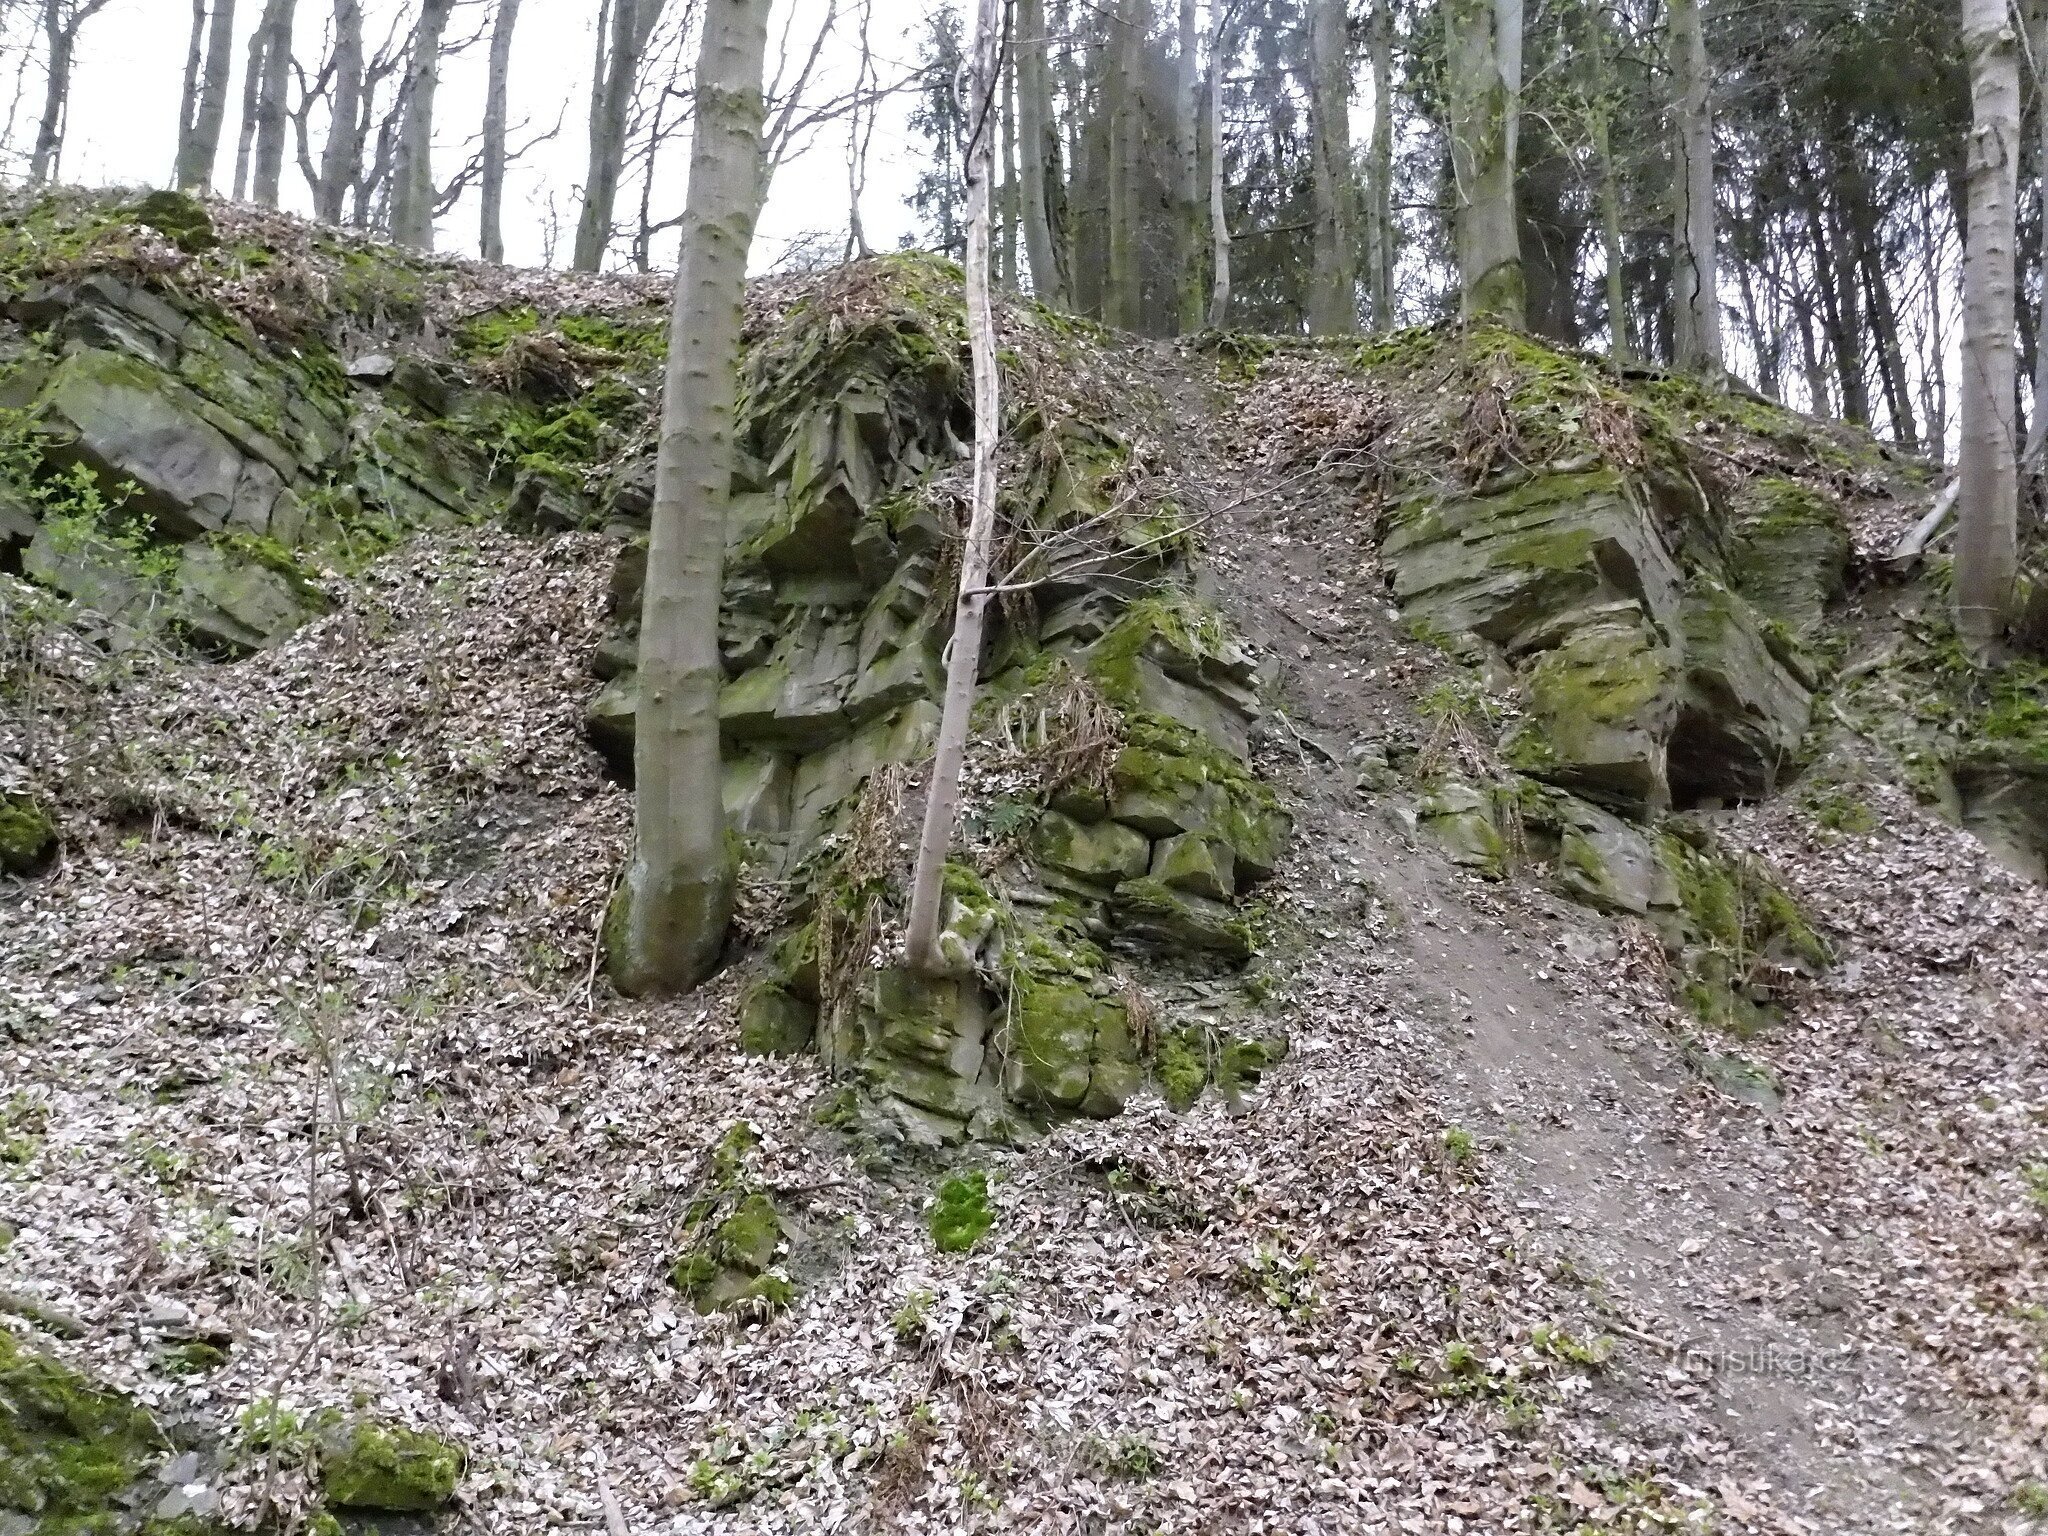 Titkos kőbányák Jilešovice közelében, második rész.